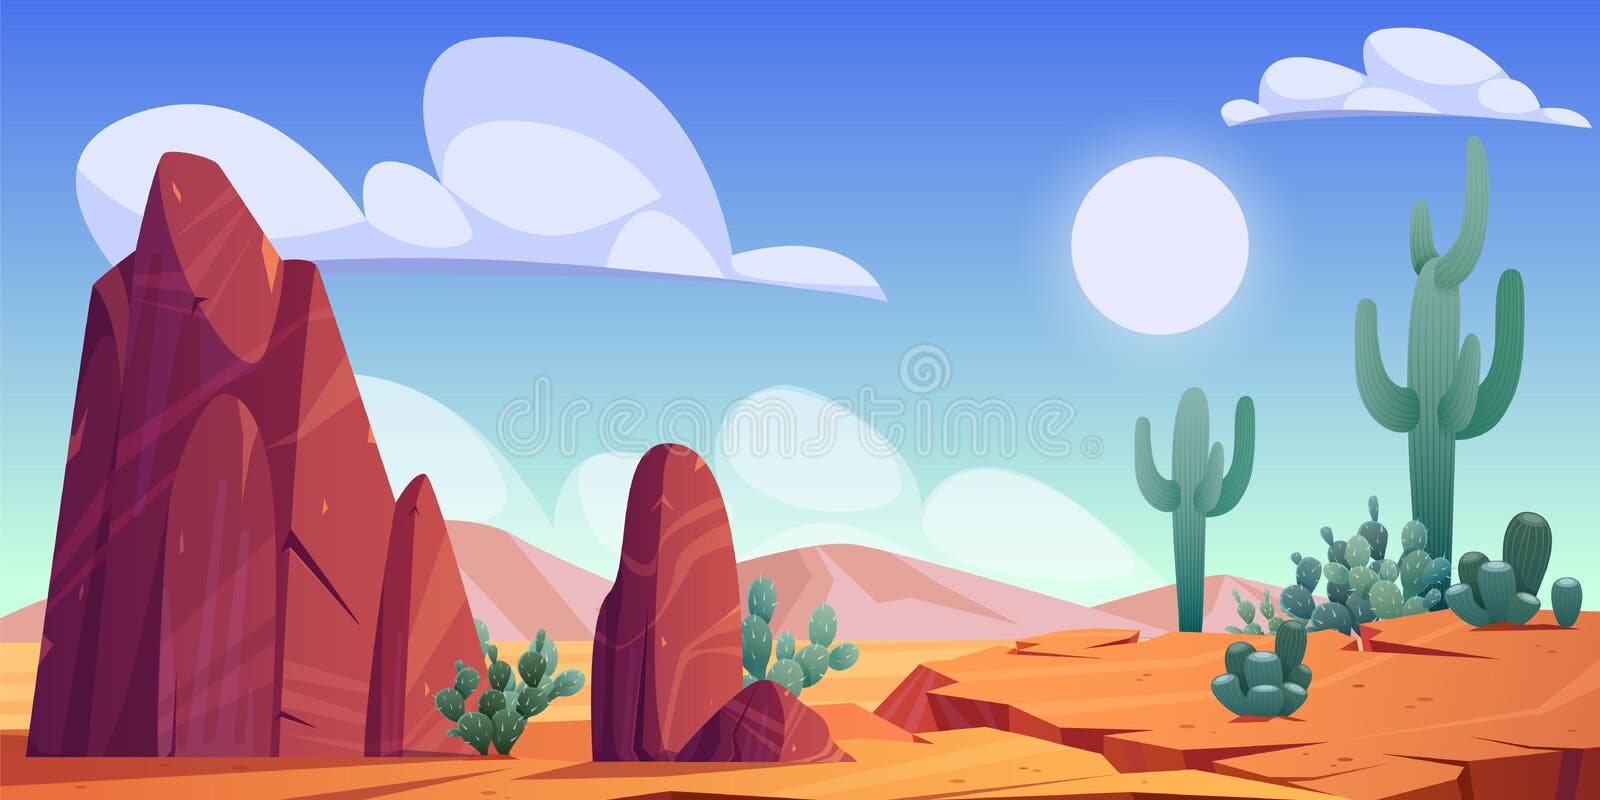 Uma paisagem surreal de deserto onde a areia movediça 00494 00